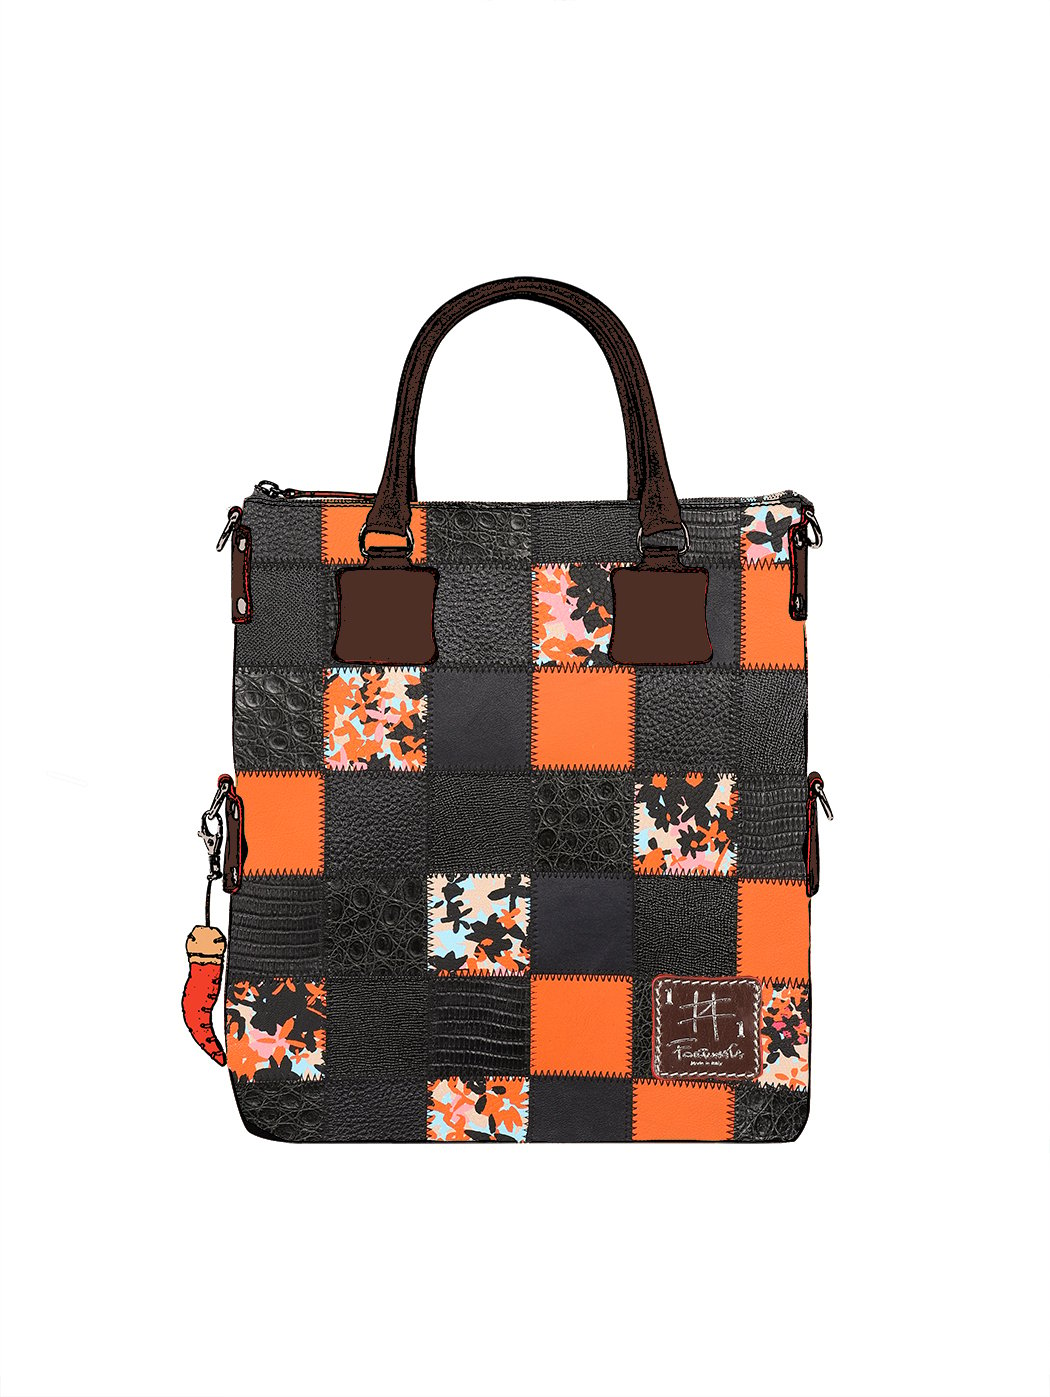 Дизайнерская сумка из коллекции Fortunata в стиле пэчворк черно - оранжевого цвета